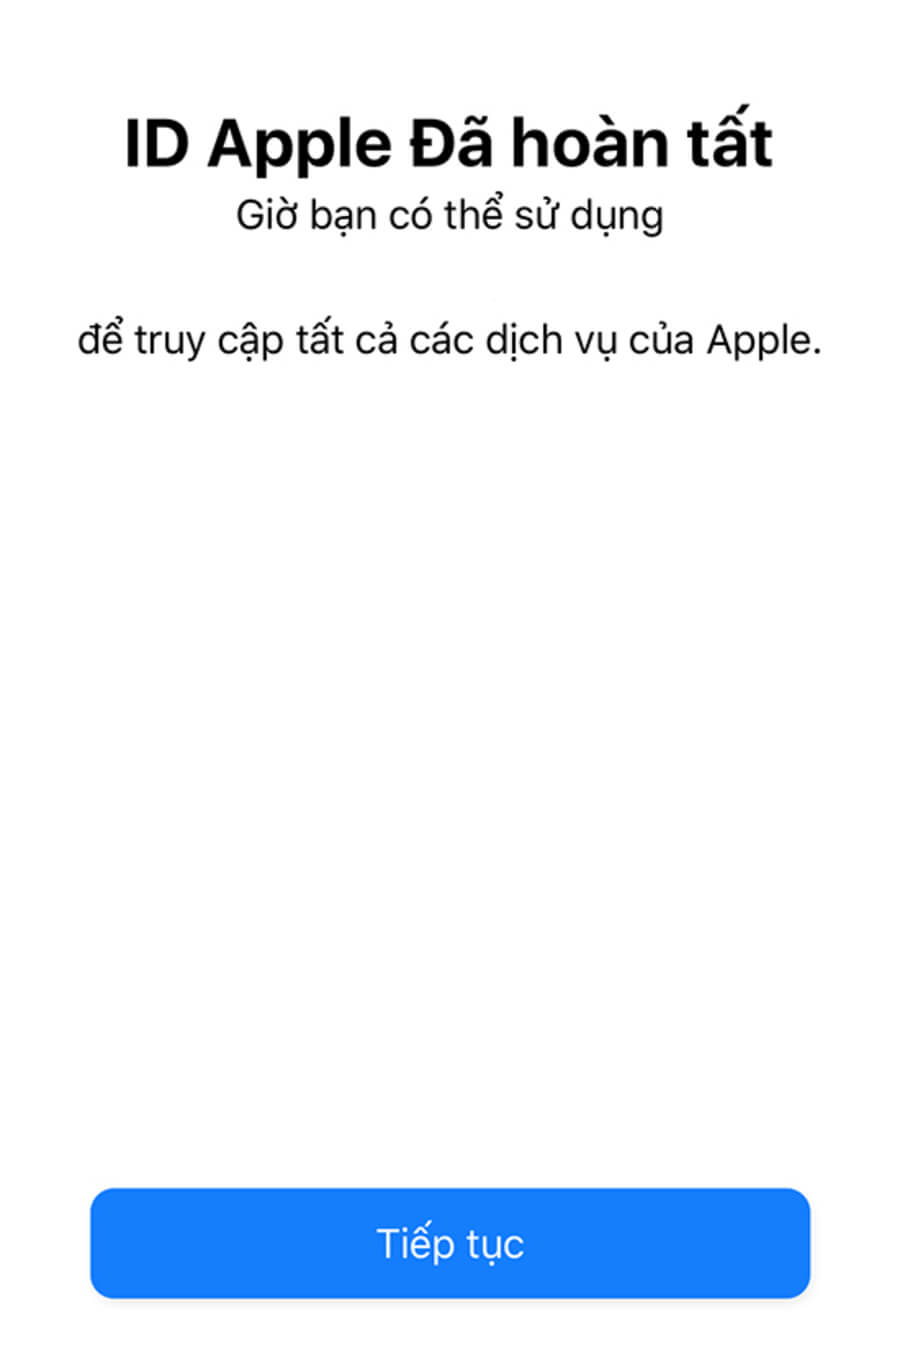 Hướng dẫn tạo tài khoản Apple ID trong 3 phút bằng iPhone - Hình 11